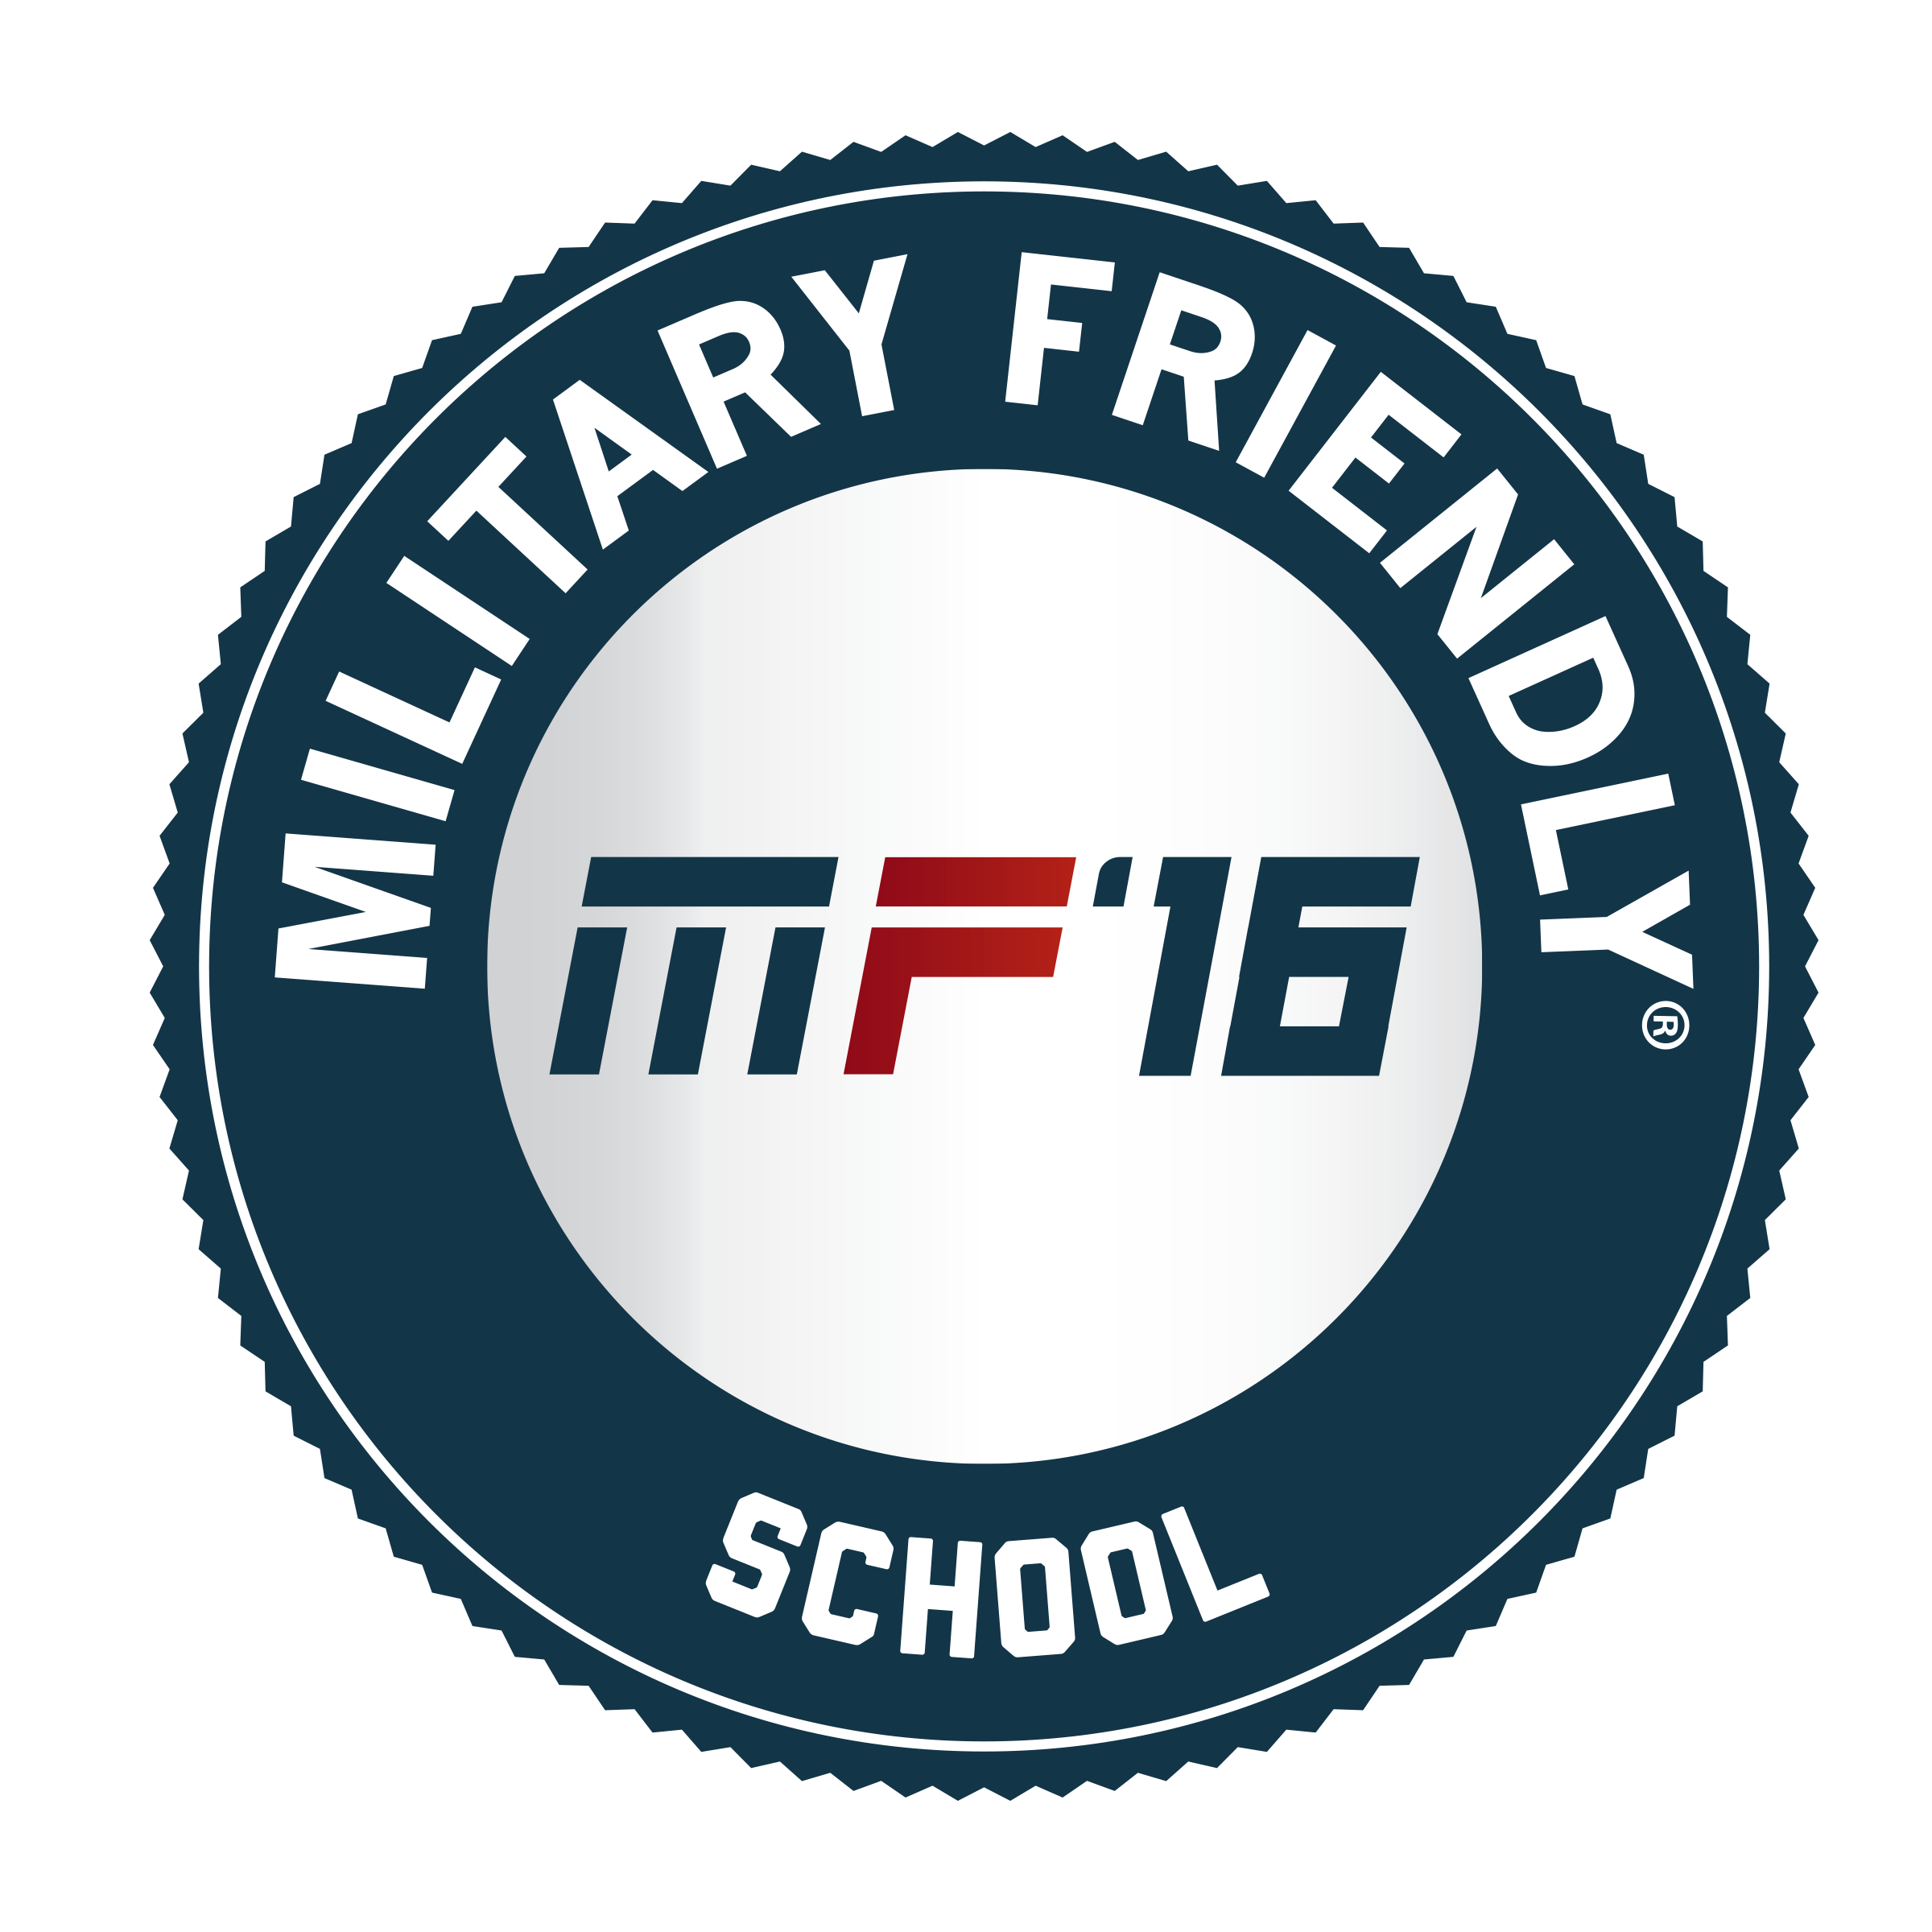 2016 Military Friendly School